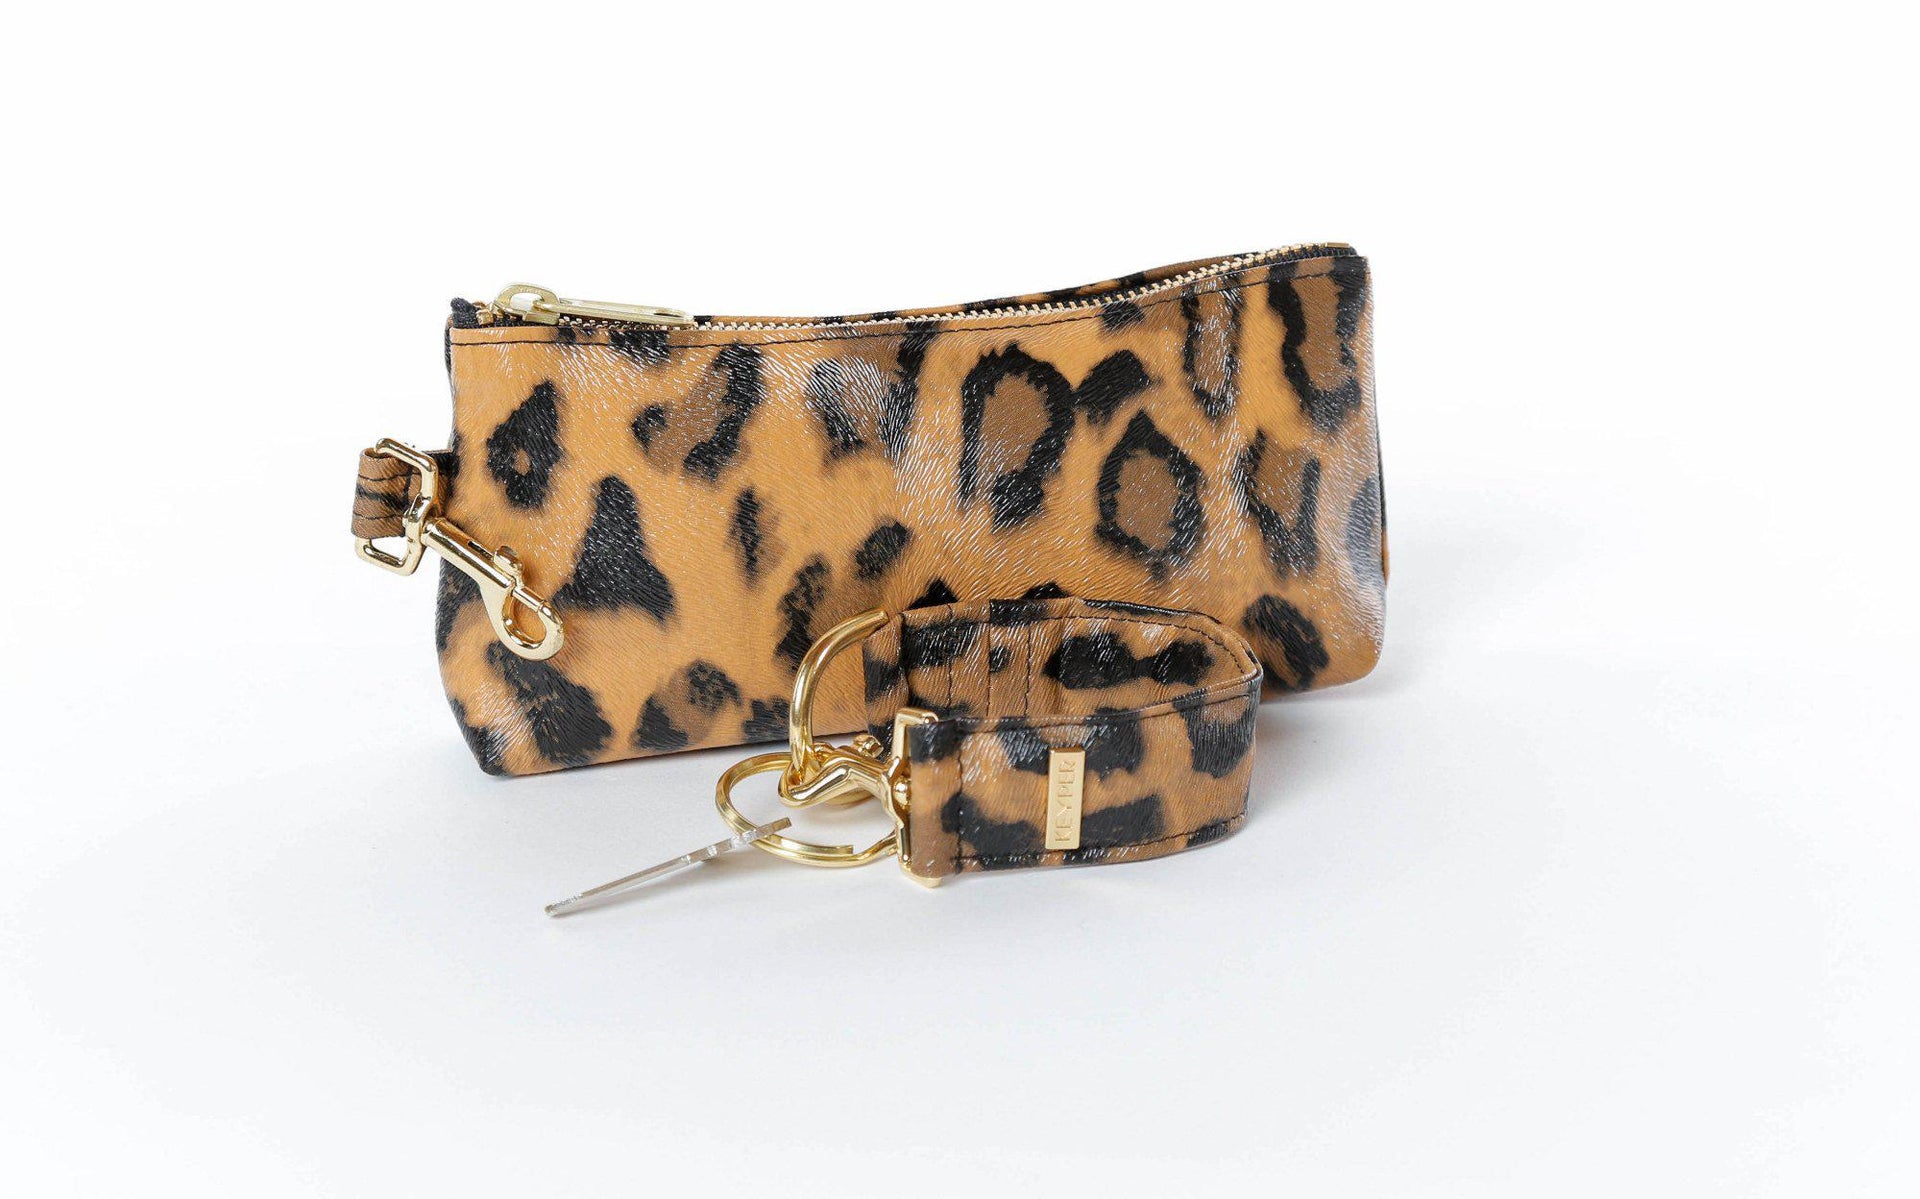 clutch purse, travel purse, key ring bracelet, clear bag, faux leather (vegan), pouch, Wristlet Set